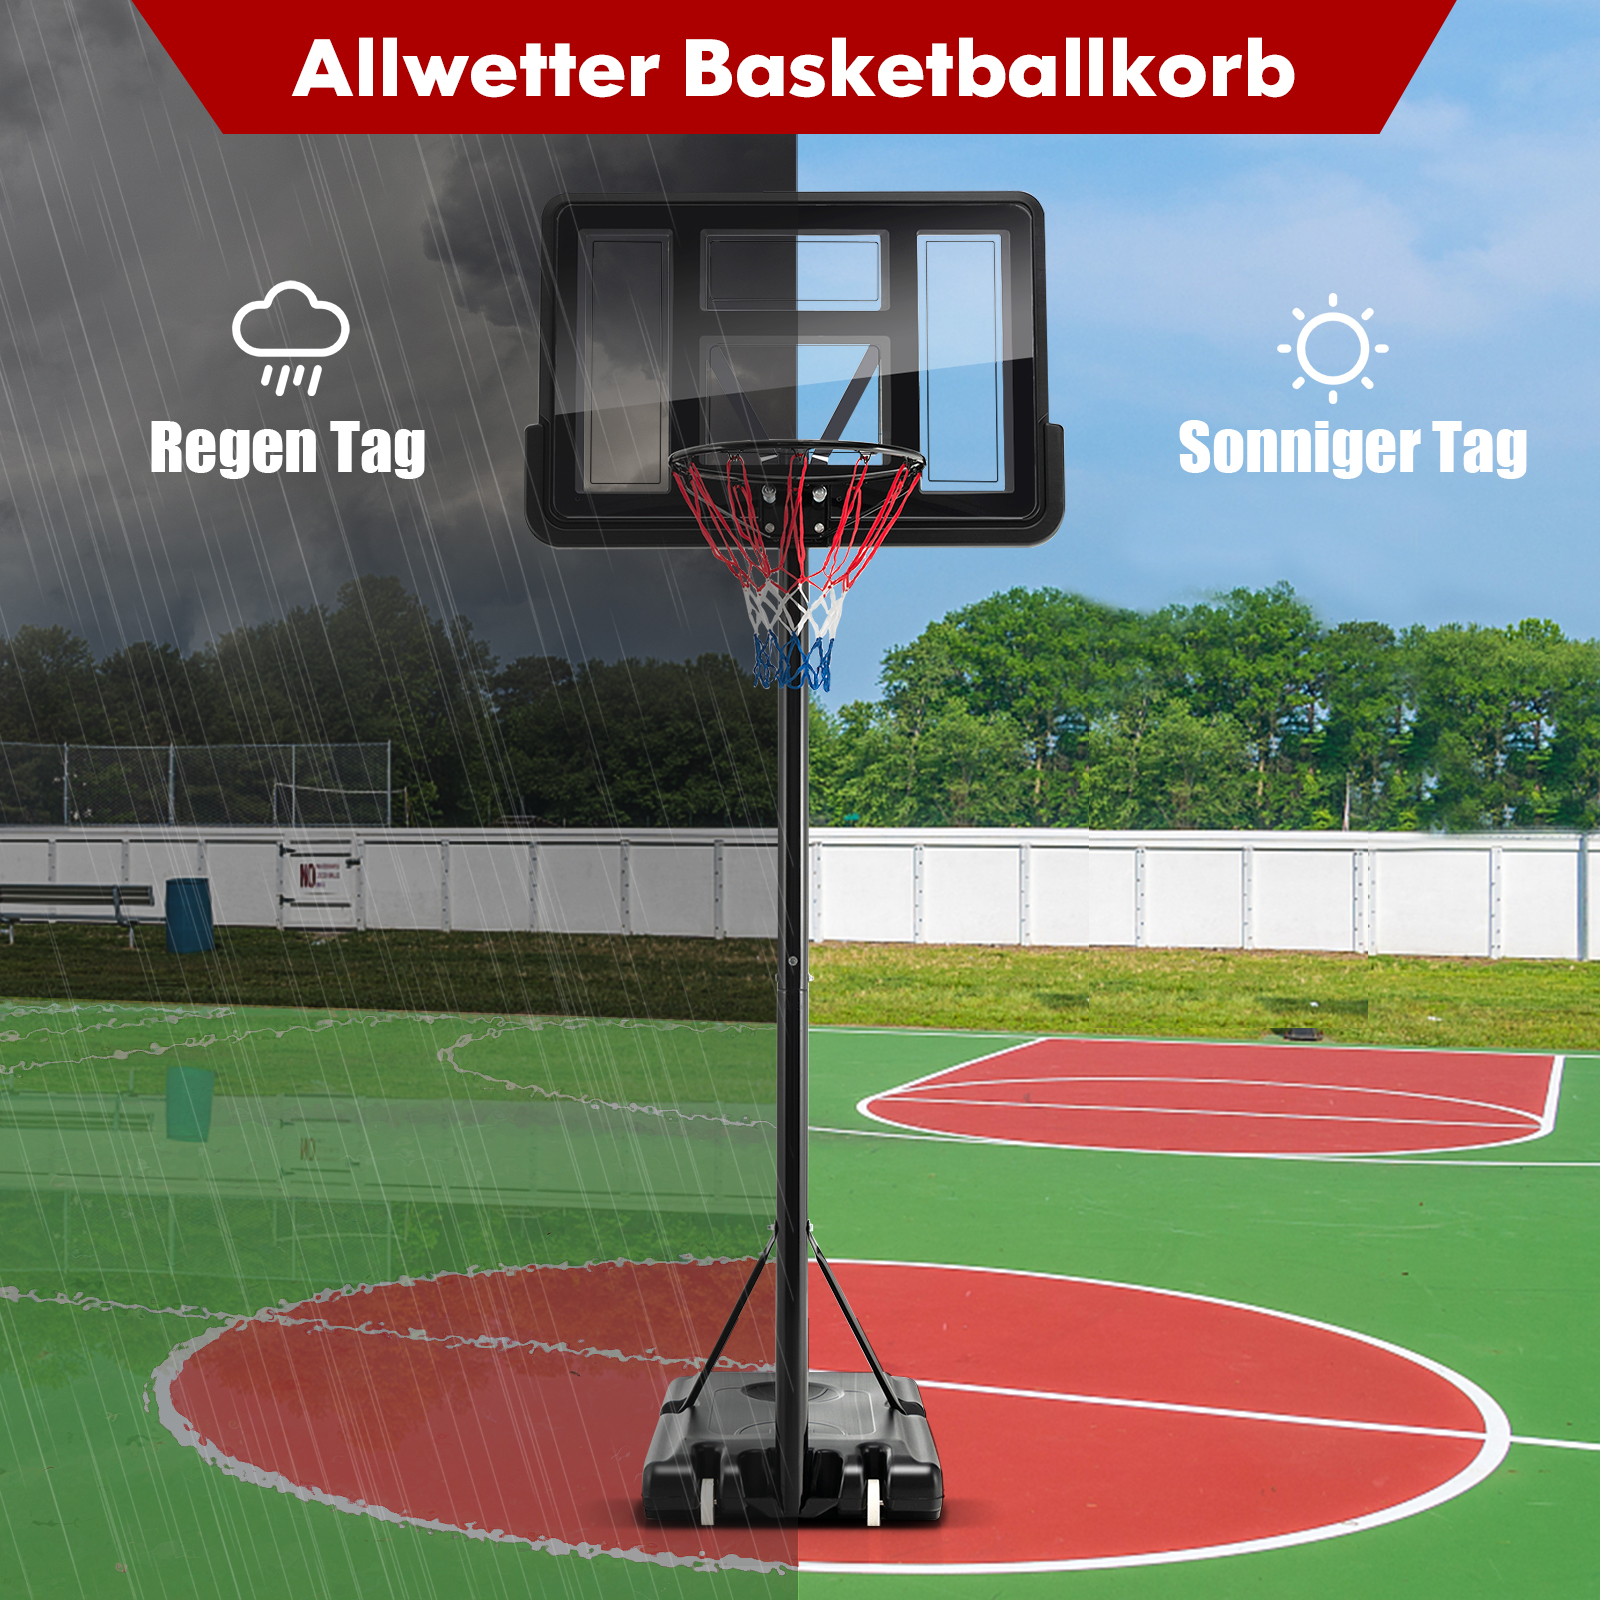 COSTWAY Basketballständer 130-305 cm höhenverstellbar Gartenspielzeug, Schwarz